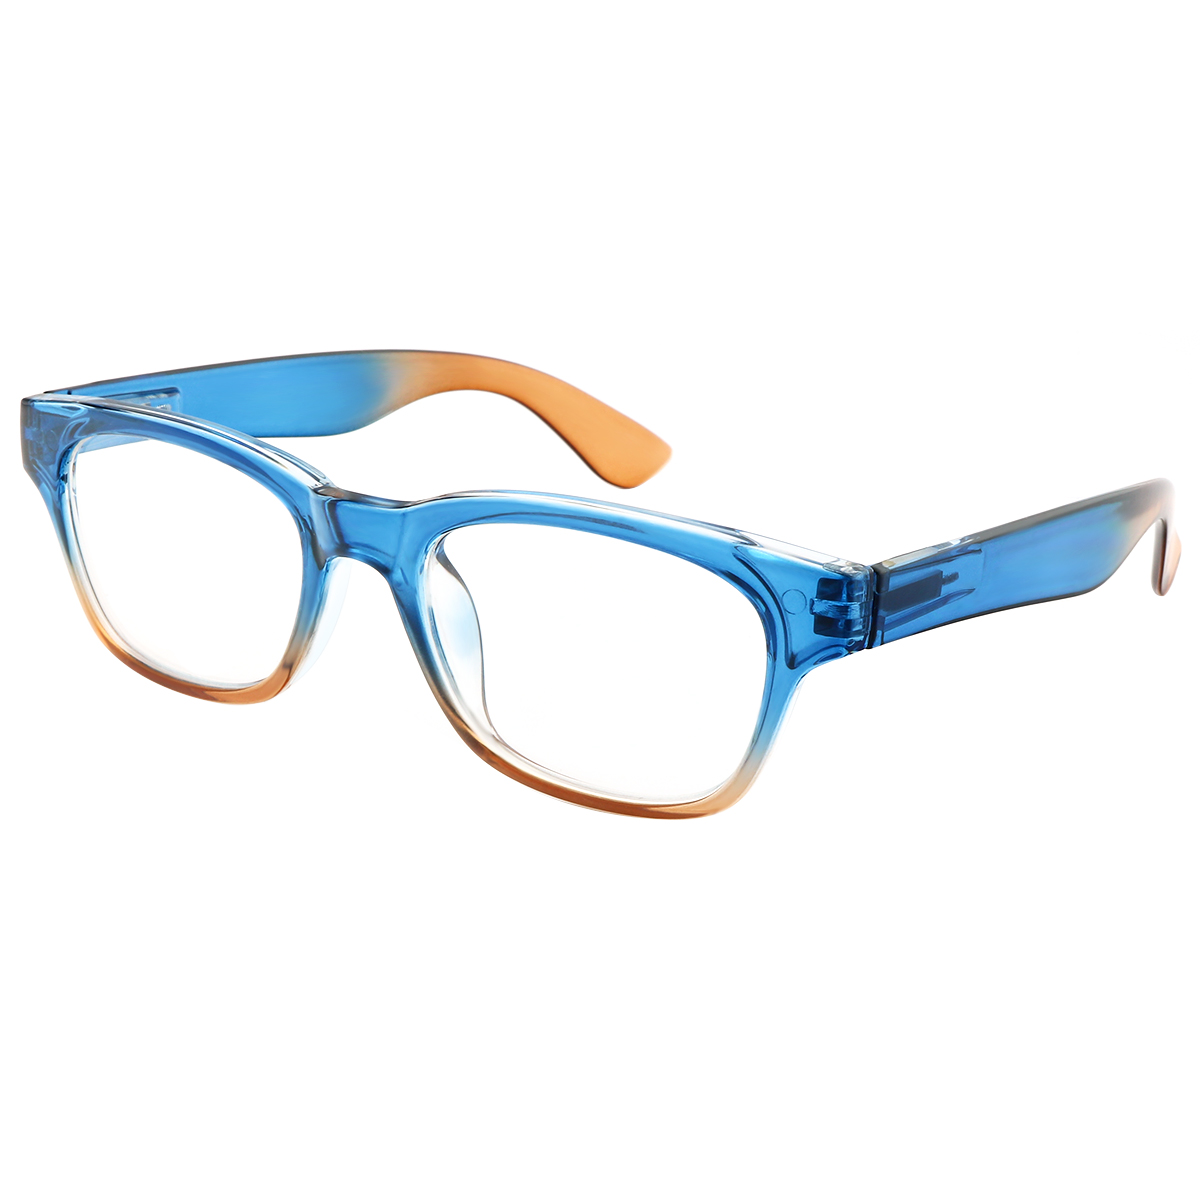 Amplify - Square Blue-Orange Reading Glasses for Men & Women